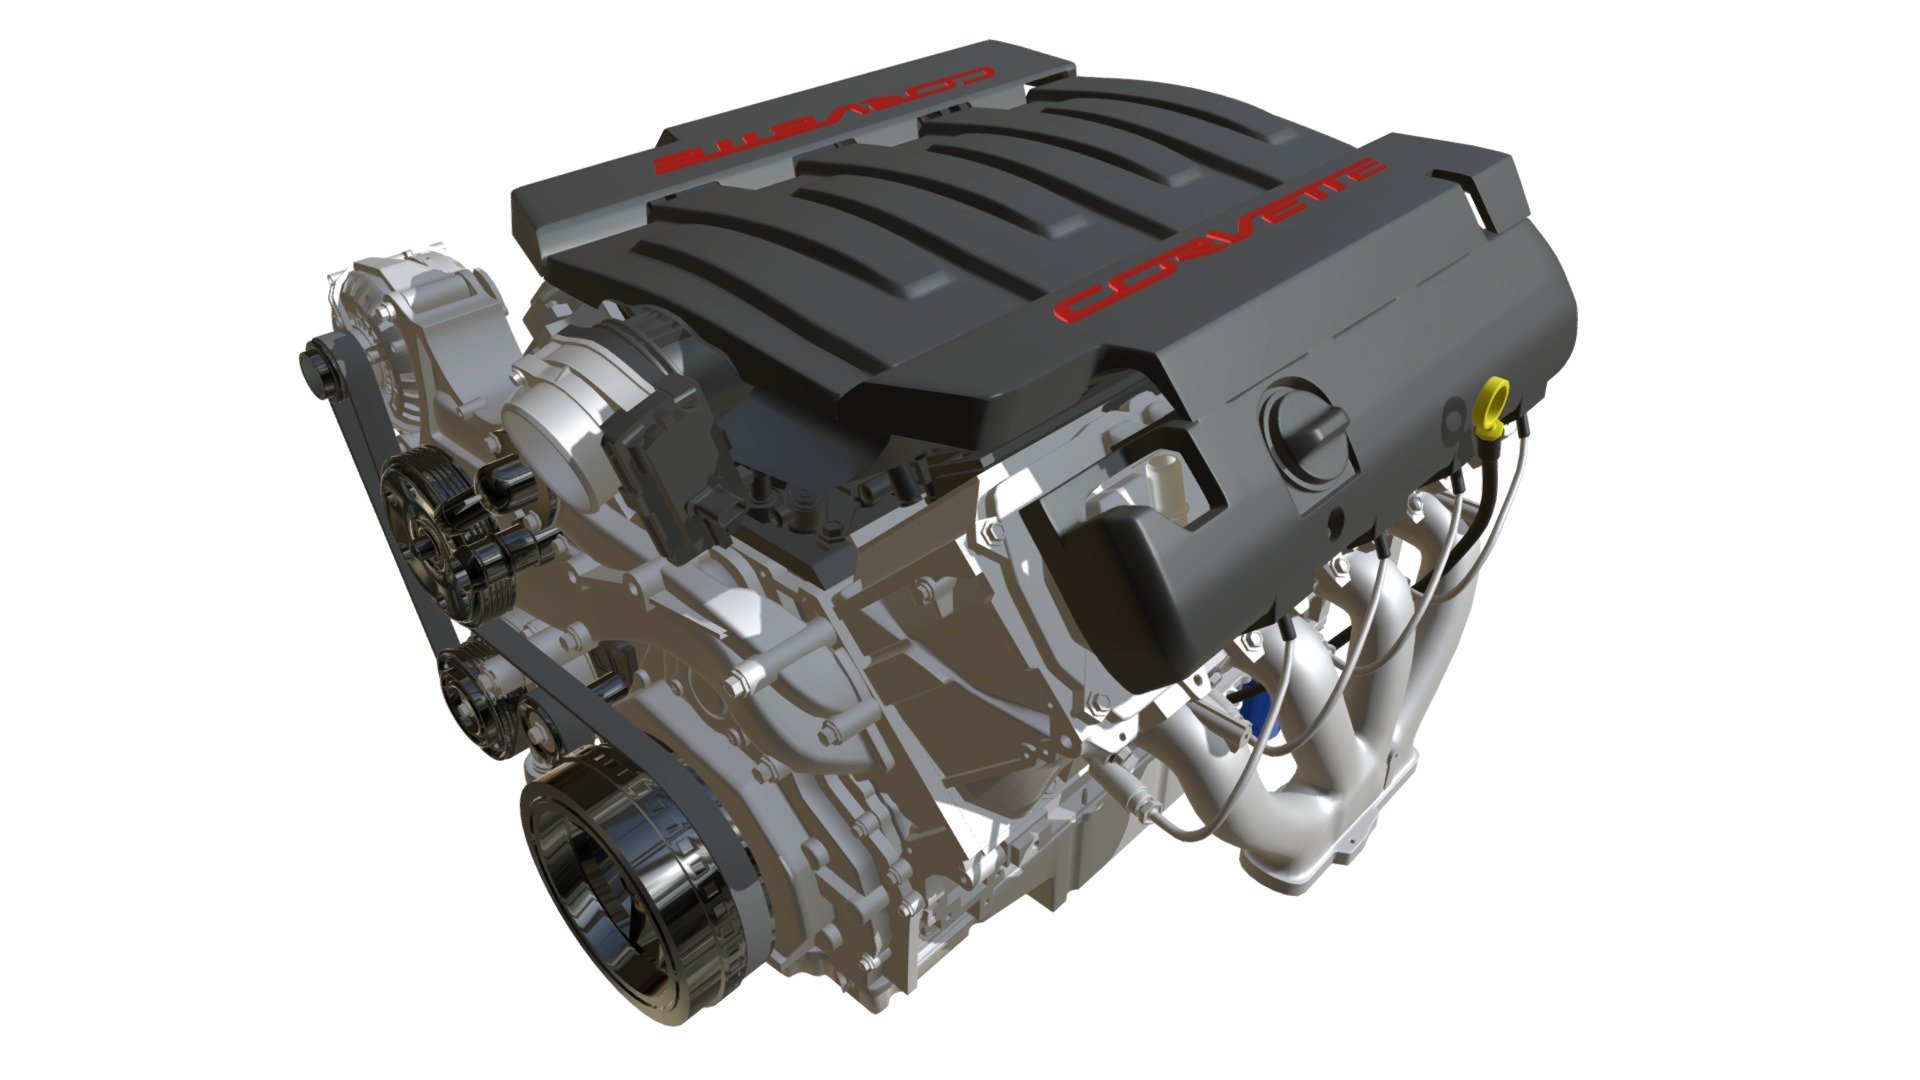 Chevrolet Corvette V8 Engine